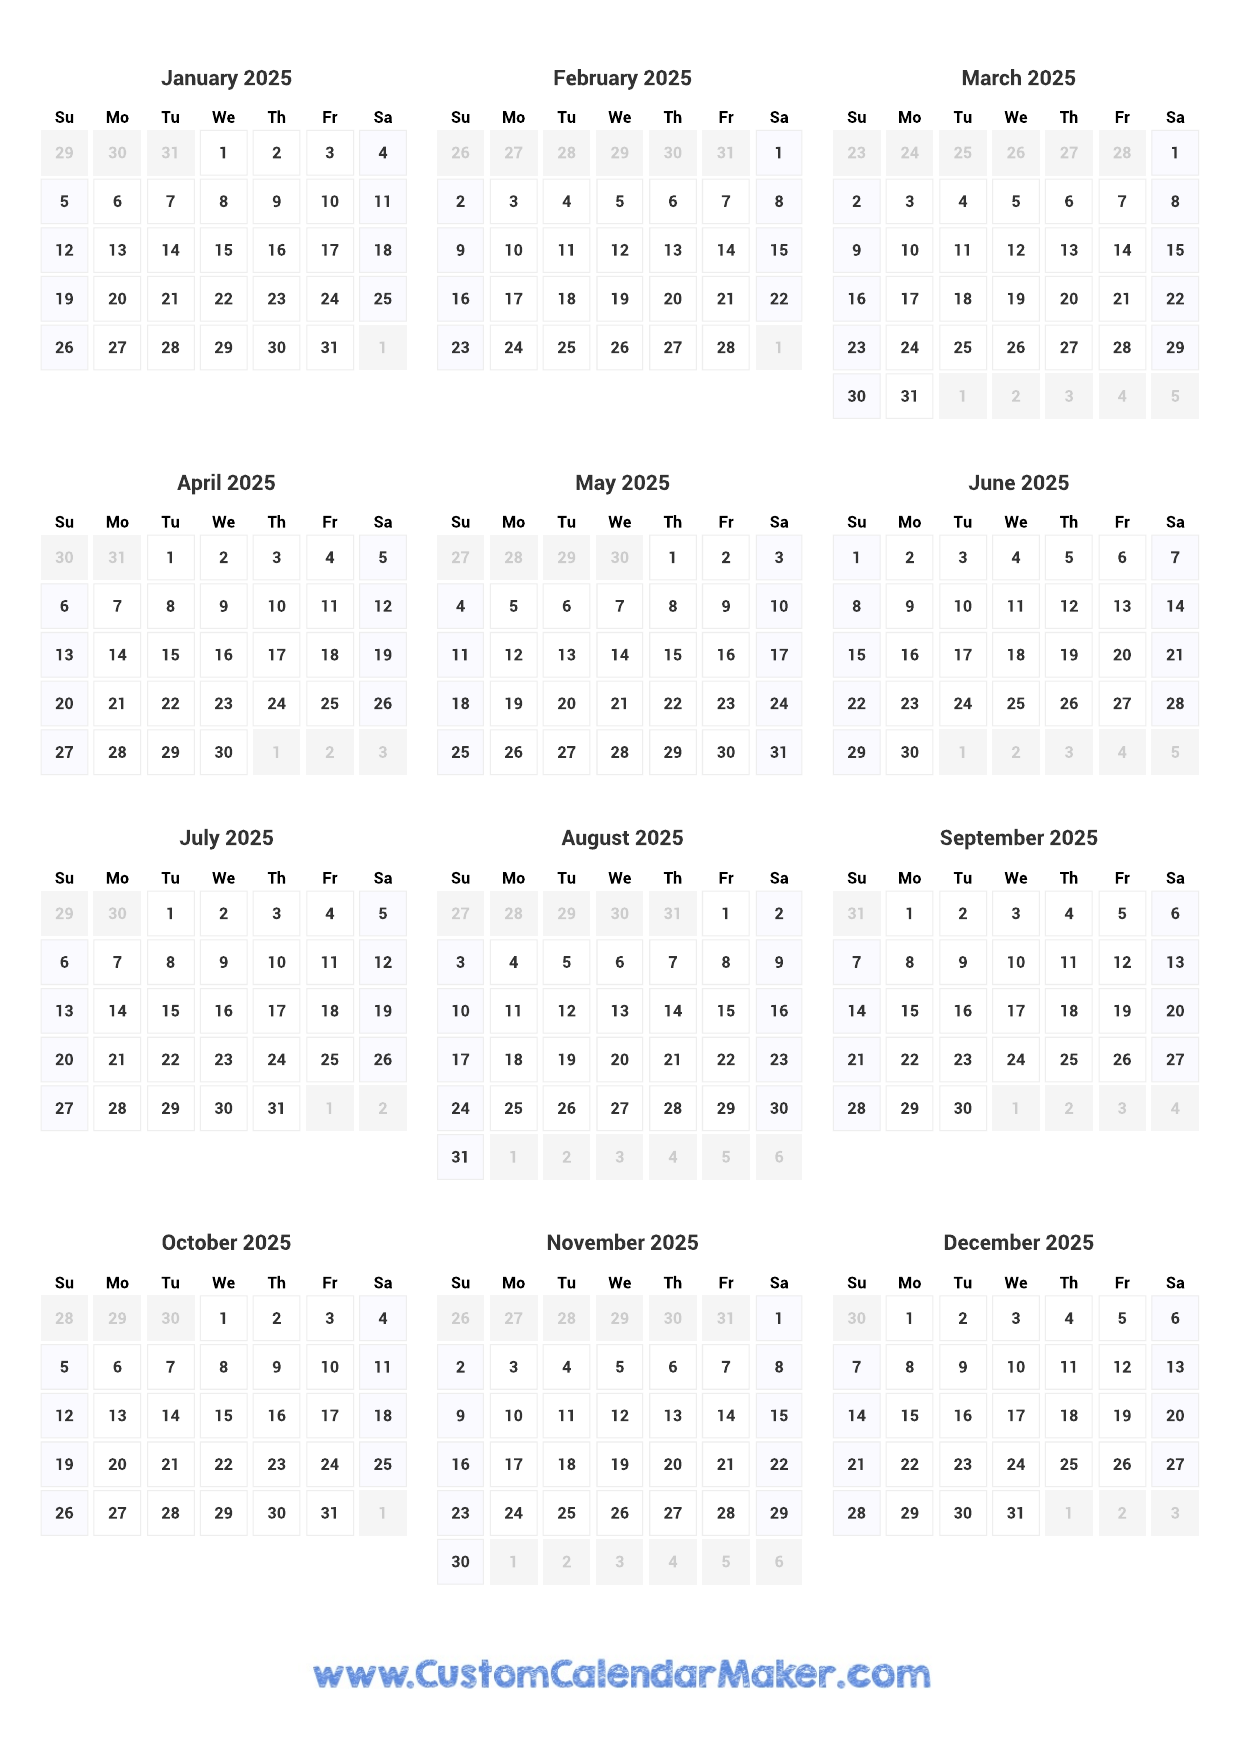 2025-calendar-printable-customize-and-print